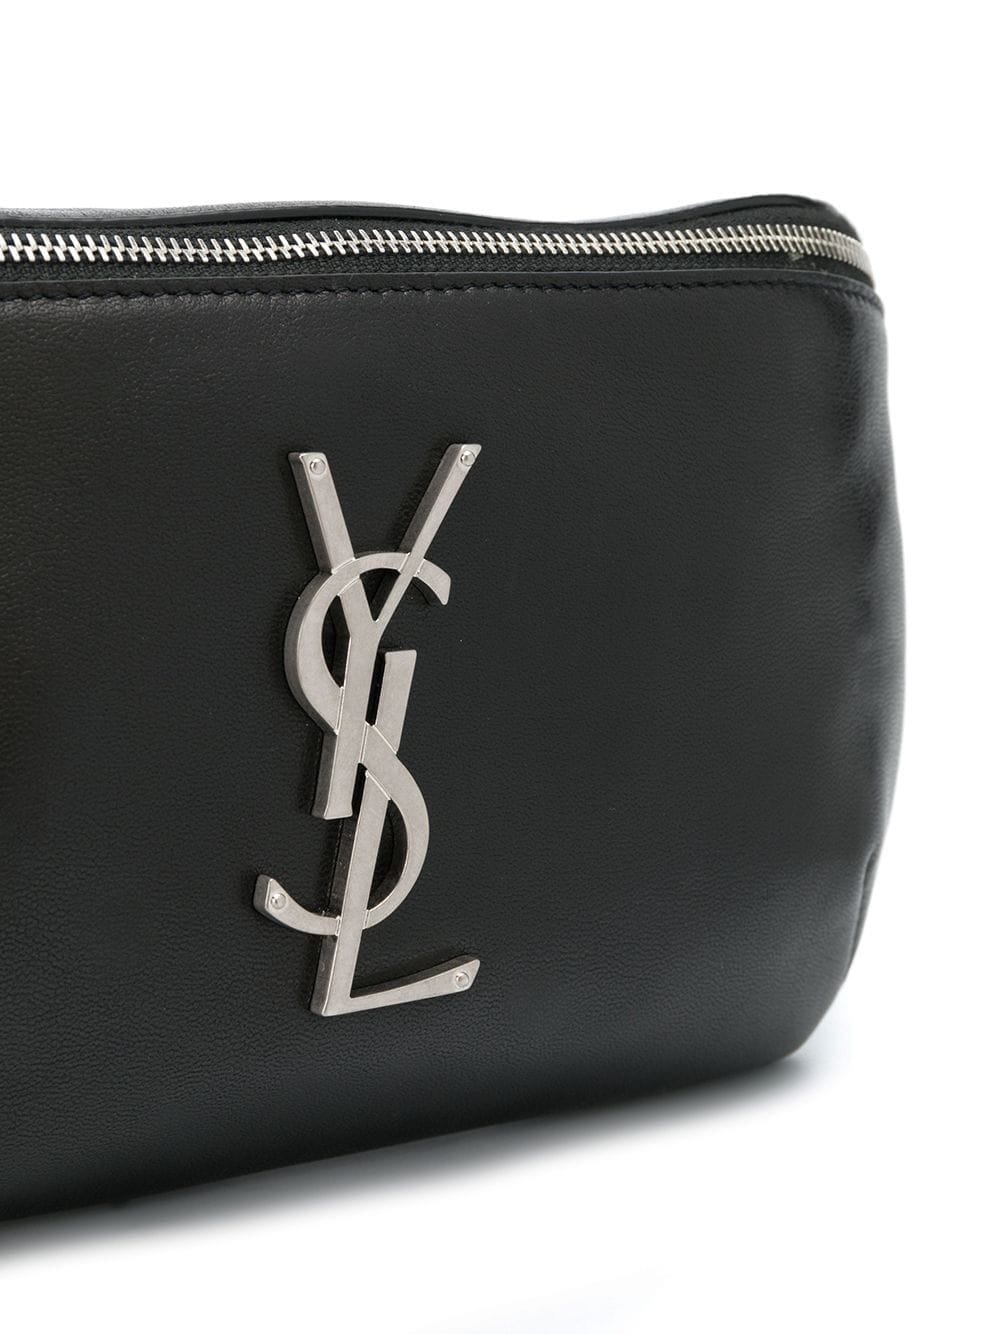 Saint Laurent Belt Bags for Women, YSL